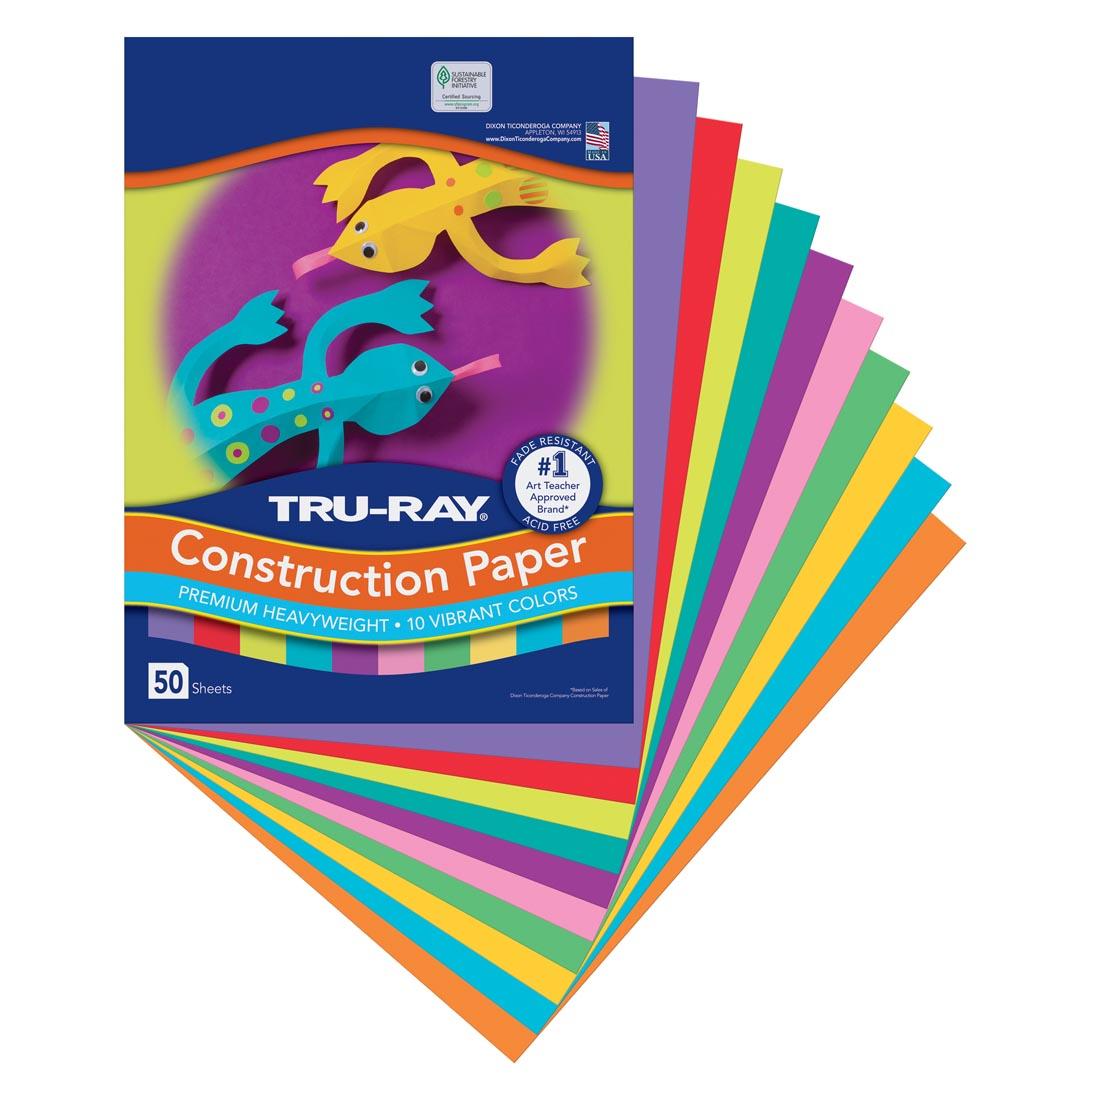 Tru-Ray Construction Paper 9x12" Vibrant Color Assortment